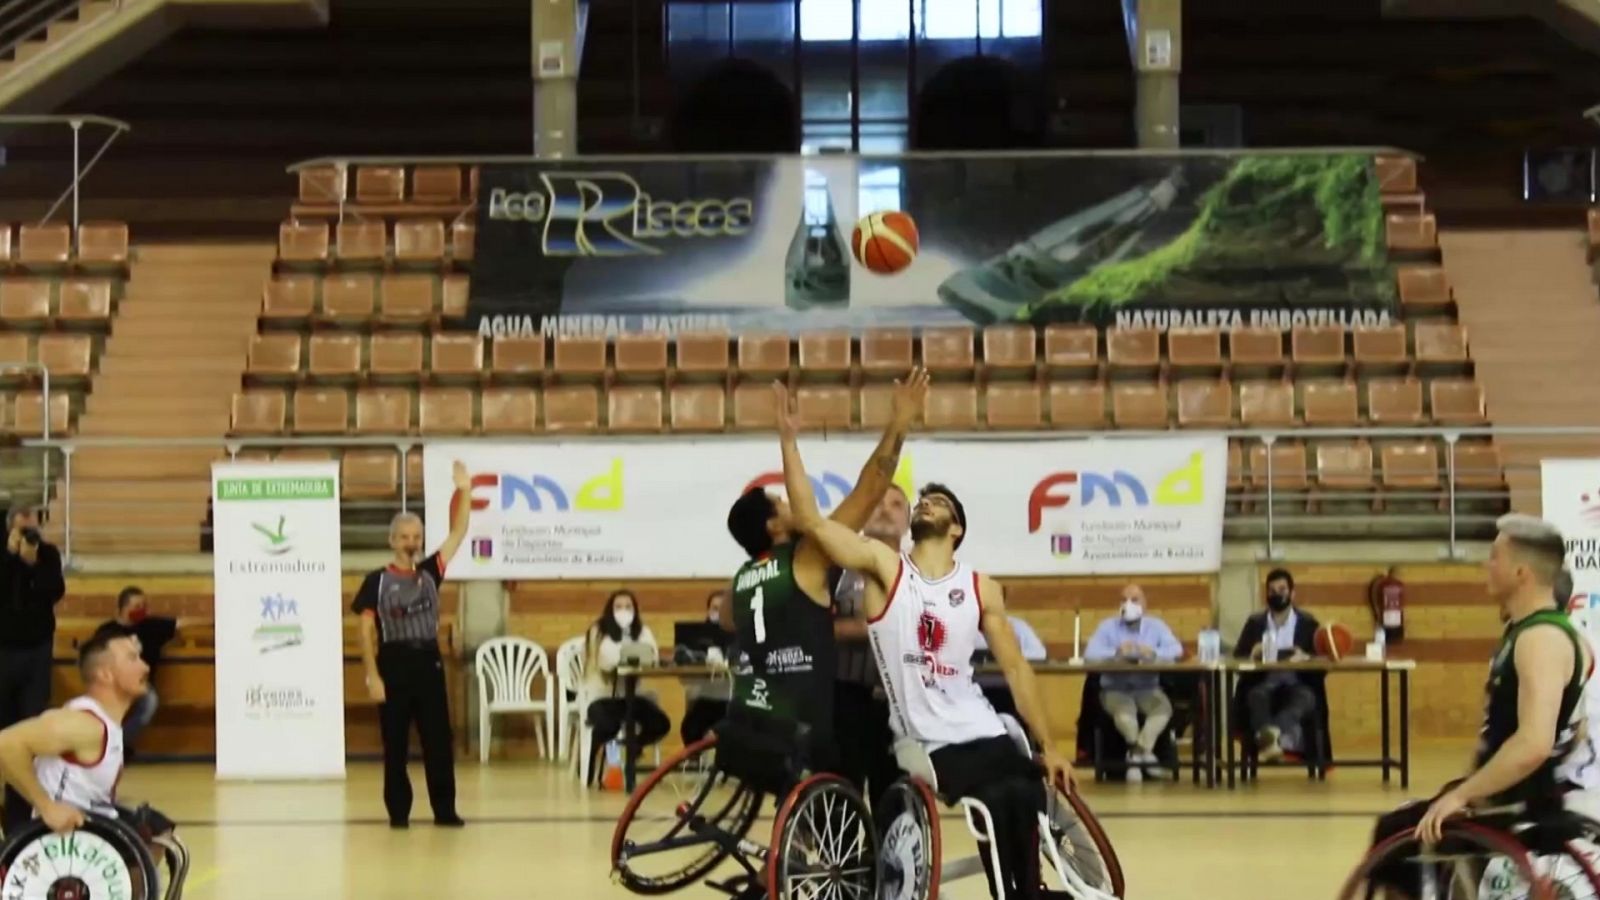 Baloncesto en silla de ruedas - Liga BSR División de Honor. Resumen Jornada 2 - RTVE.es